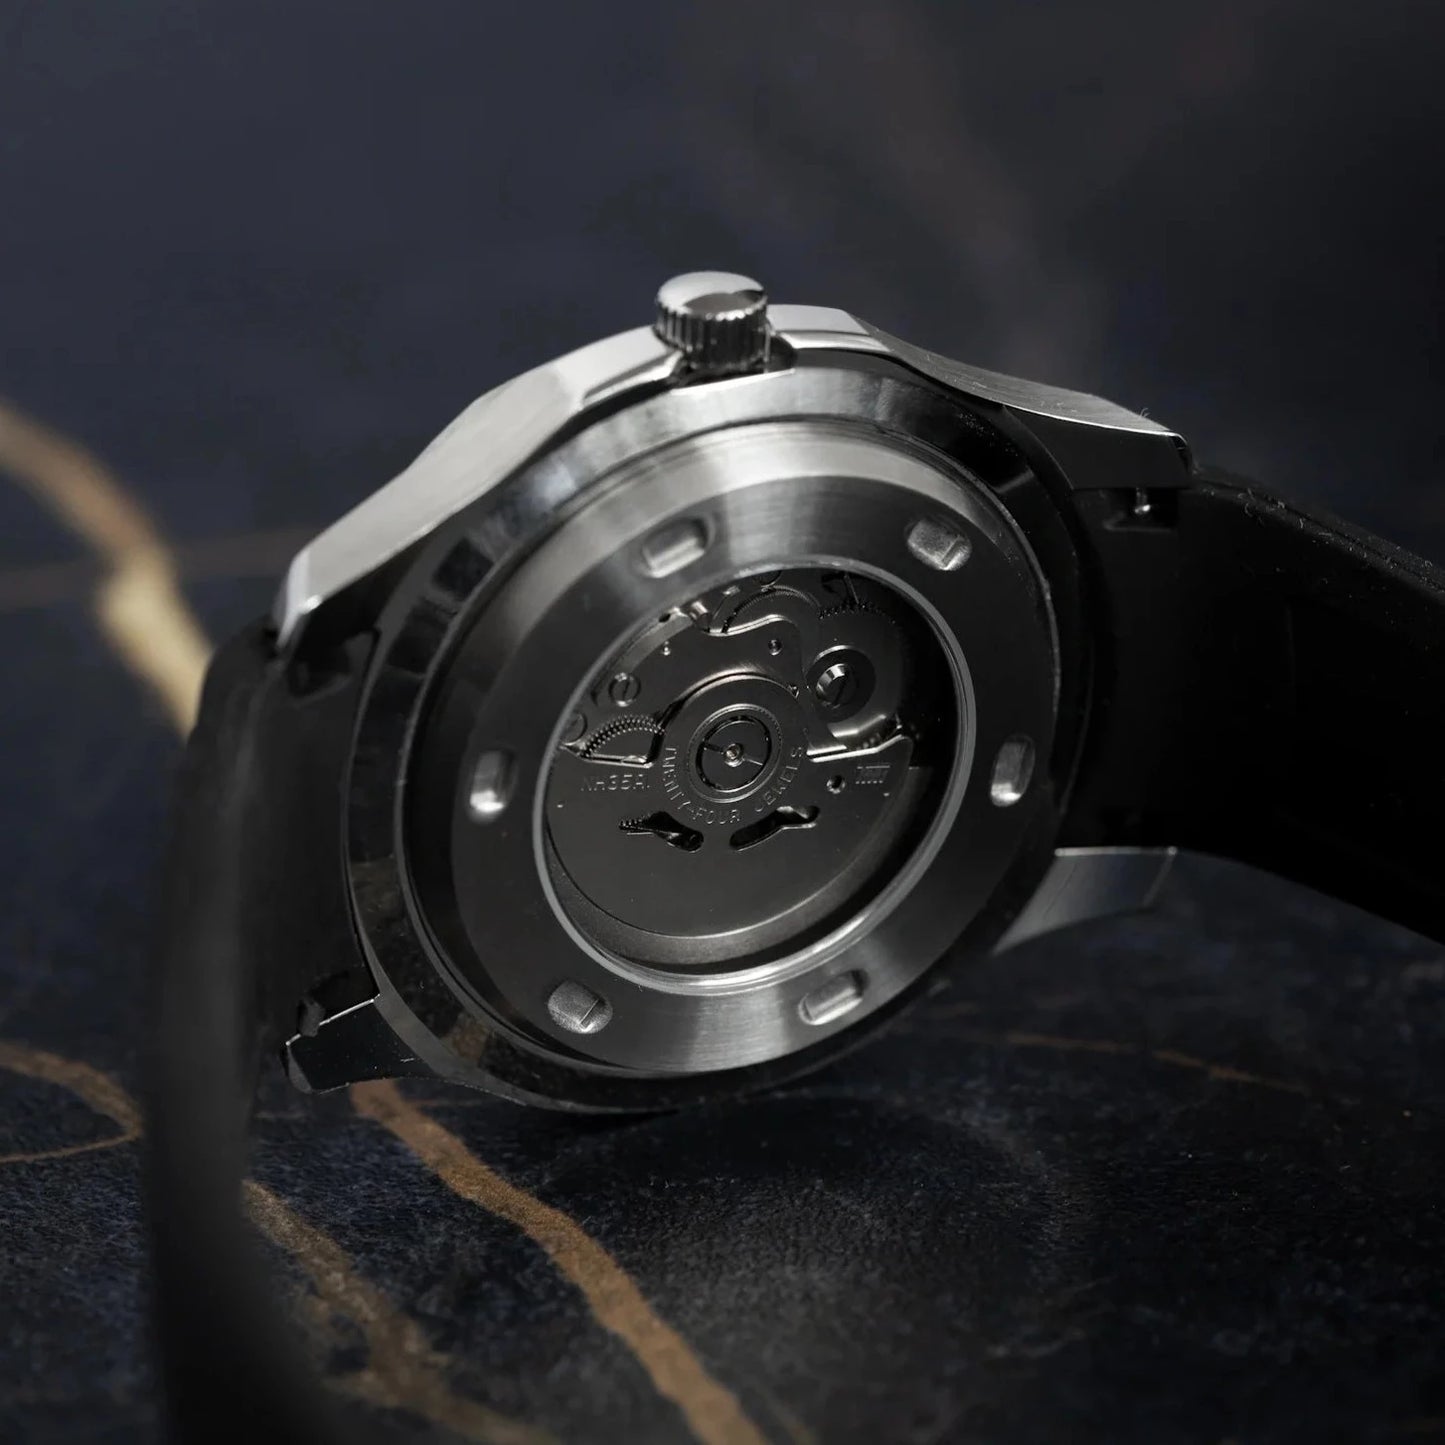 Seiko Mod Black Nautilus Watch with Silicone Strap